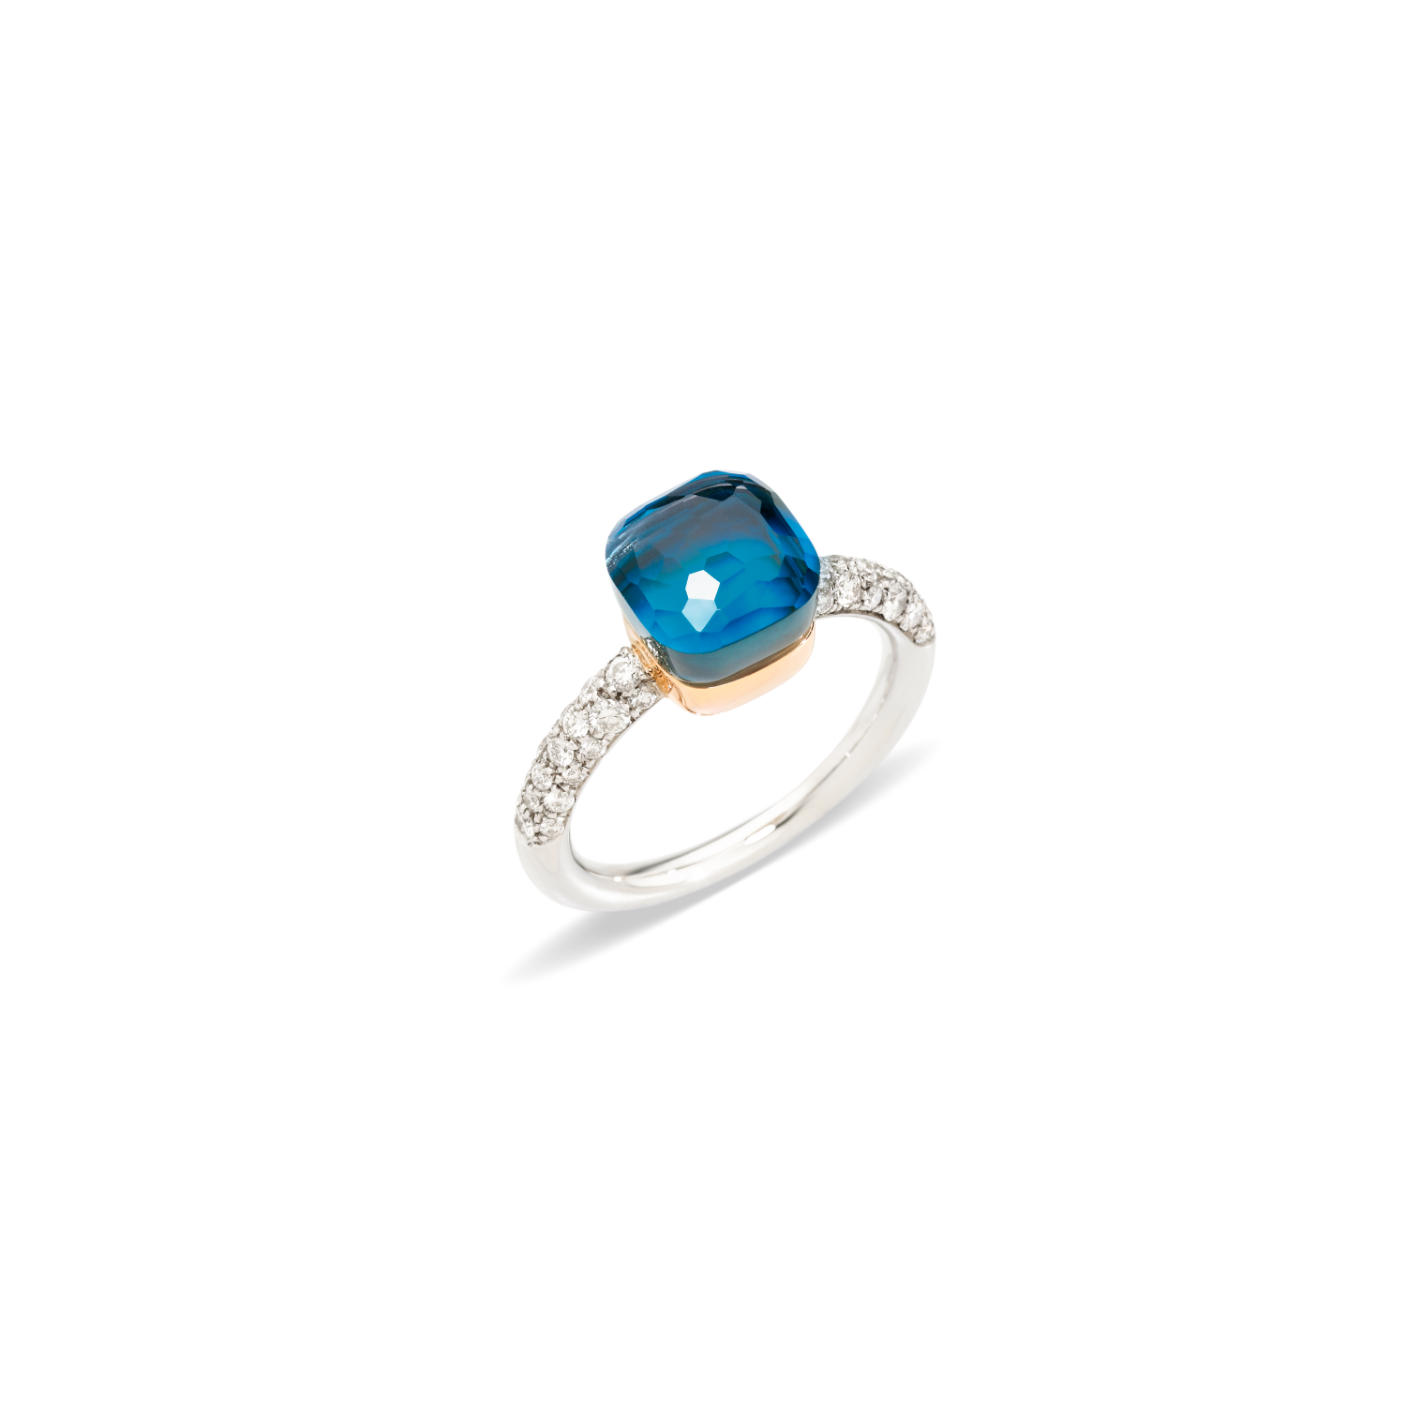 PAB7040_O6WHR_B0TTU_010_Pomellato_nudo-petit-ring-white-gold-18kt-rose-gold-18kt-blue-london-topaz-turquoise-diamond.png